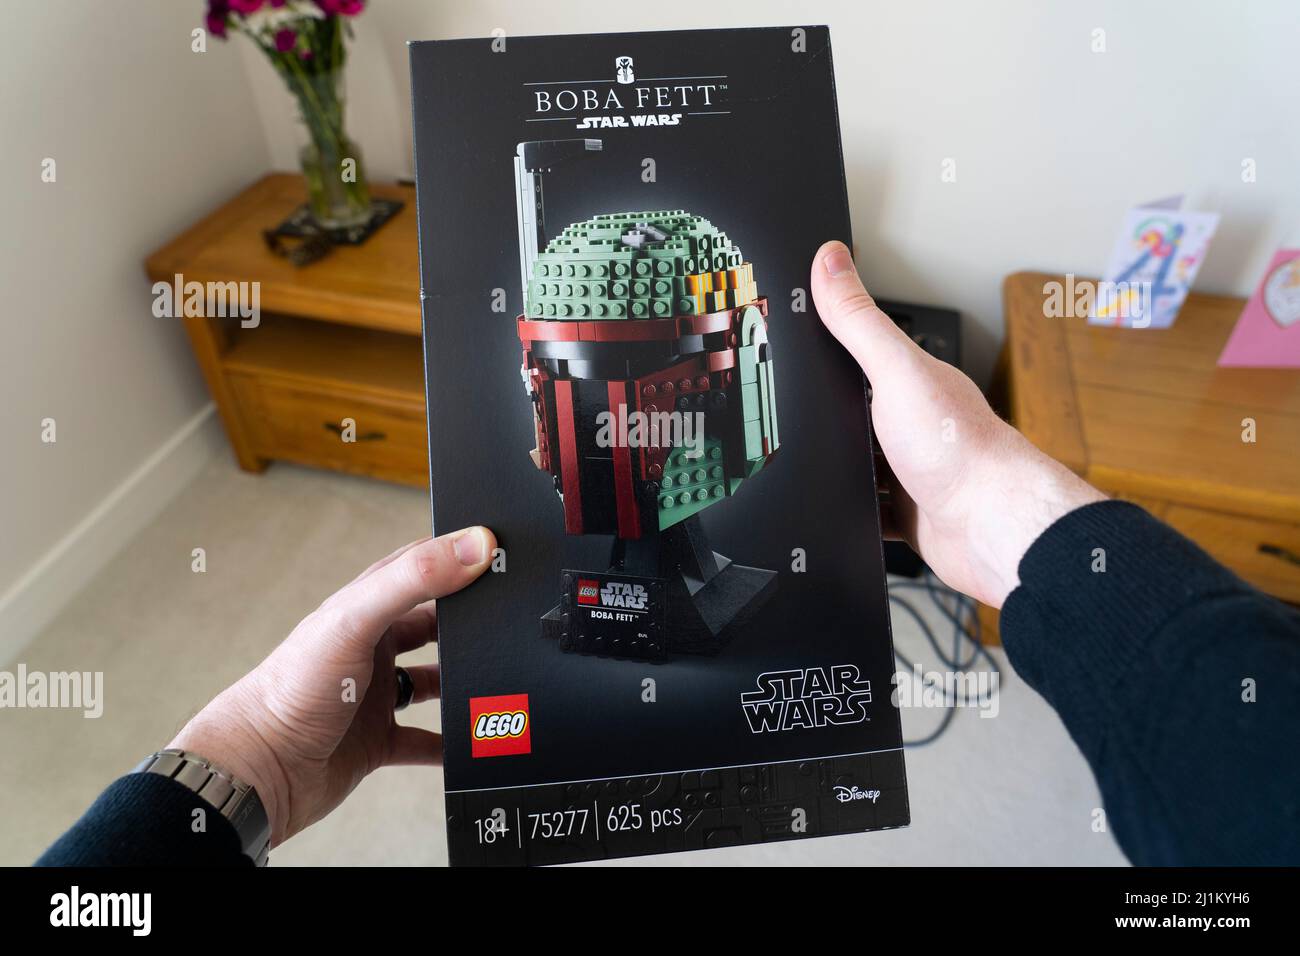 Un homme dans ses années quarante tenant une boîte de 18+ lego pour le chef de modèle d'échelle du chasseur de primes Boba Fett de Star Wars. ROYAUME-UNI. Thème: Passe-temps pour adultes Banque D'Images